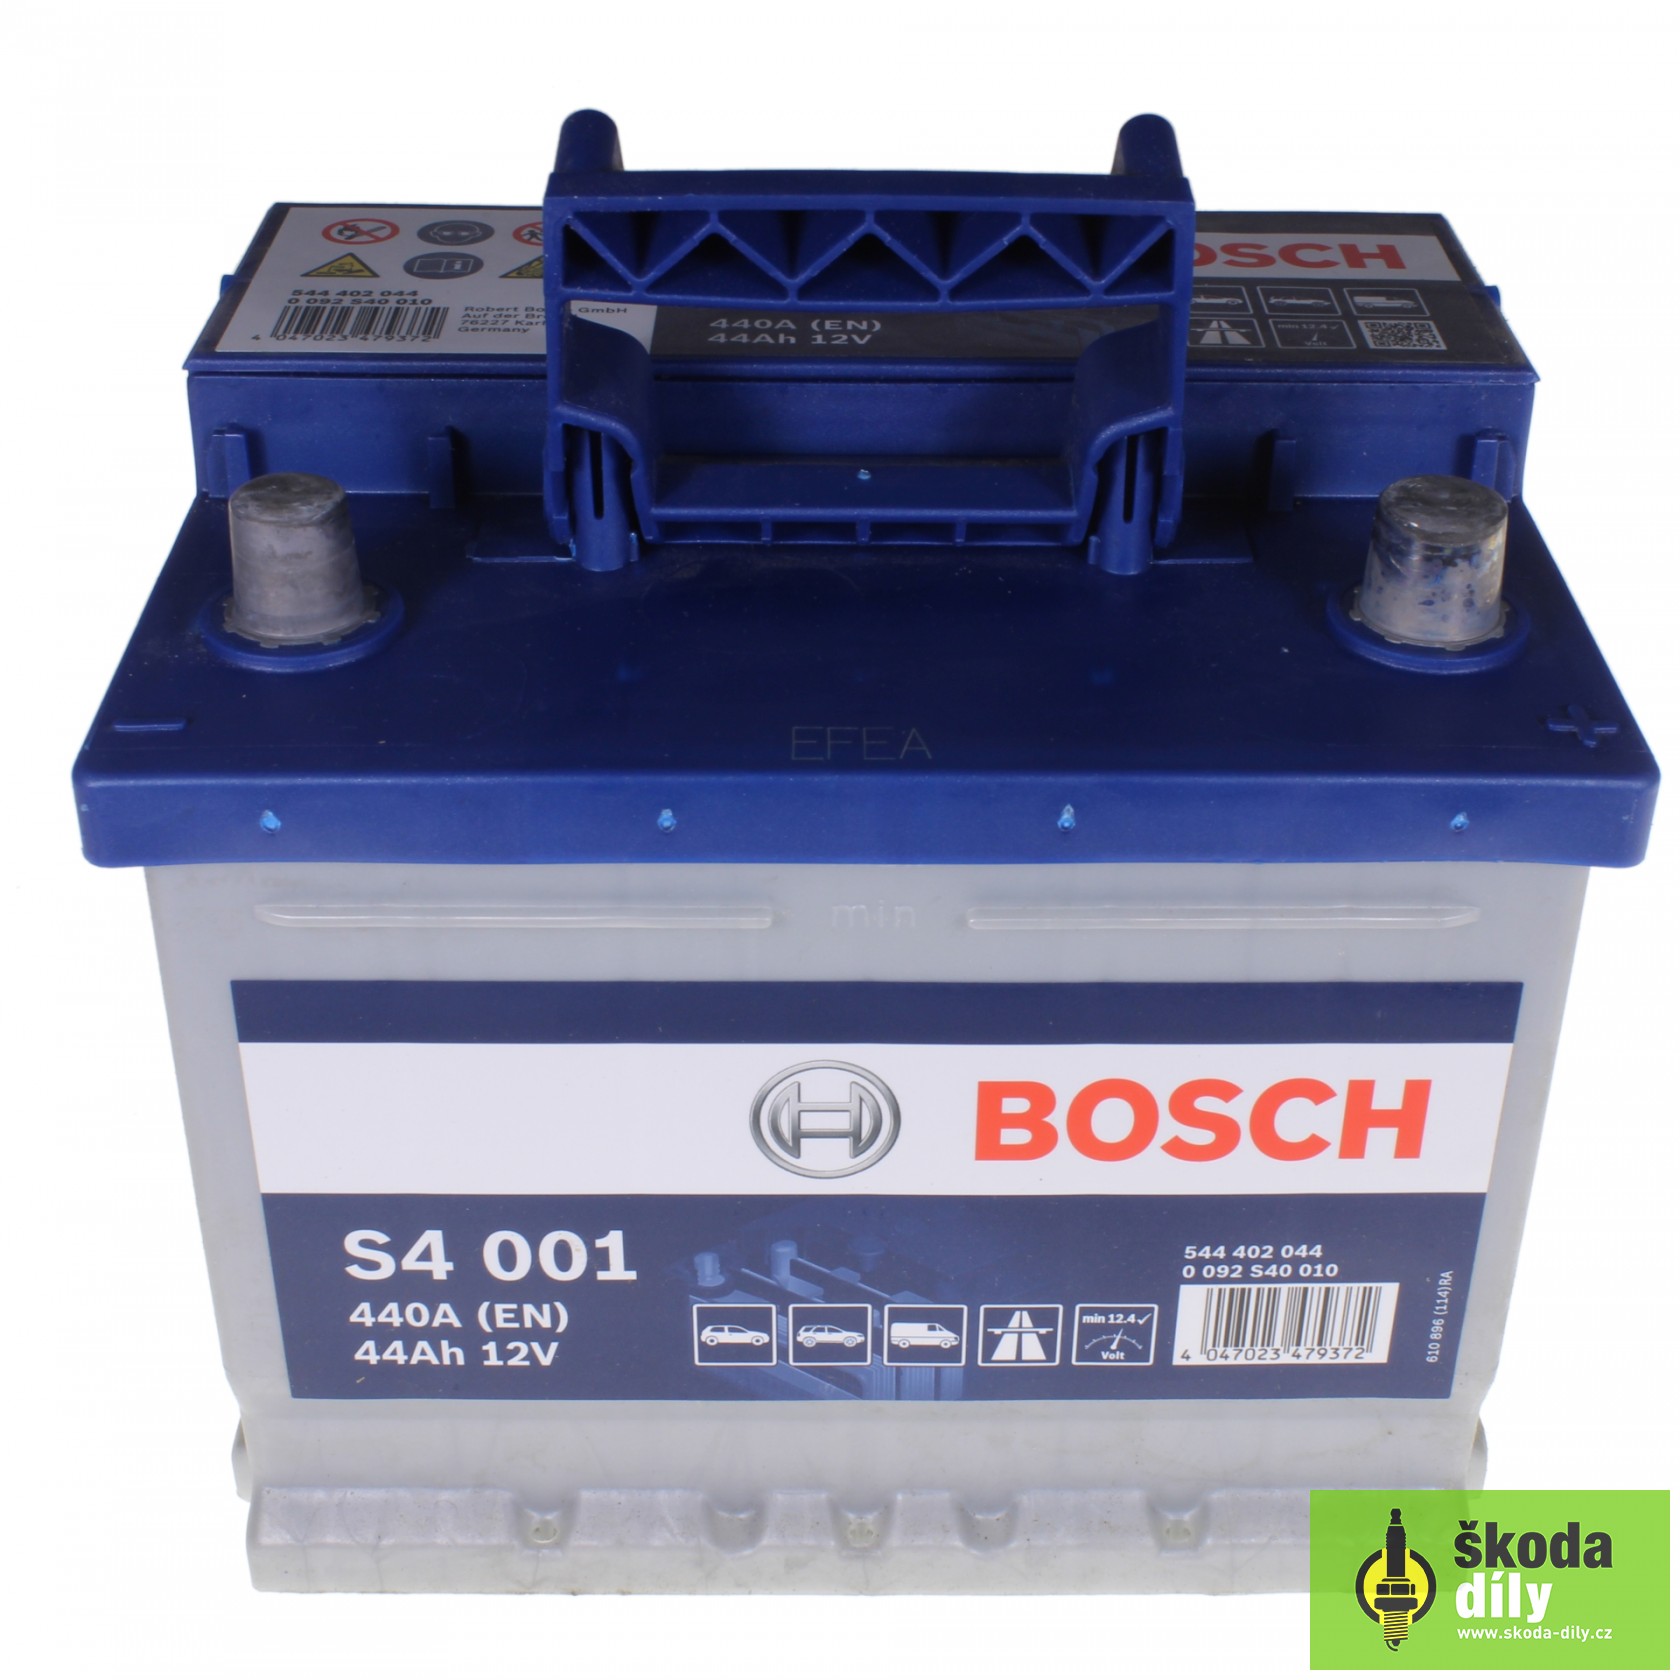 BOSCH Batterie für SKODA FABIA in Original Qualität